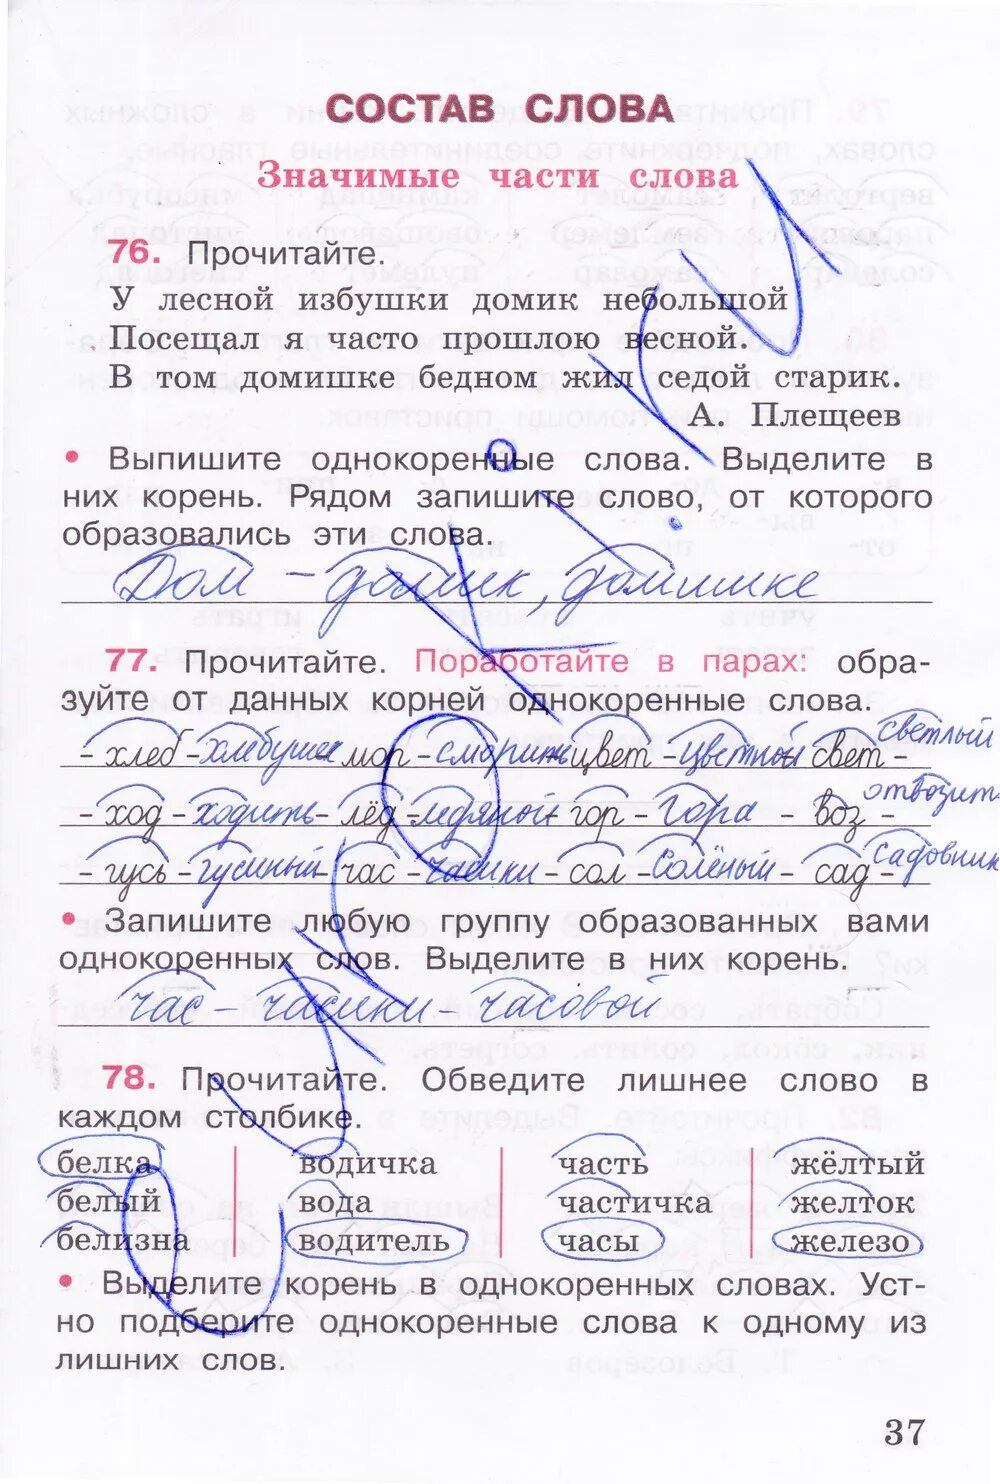 76 прочитайте. Русский язык рабочая тетрадь 4 класс 1 часть страница 37. 1 Класс русский язык рабочая тетрадь 1 часть стр 37.